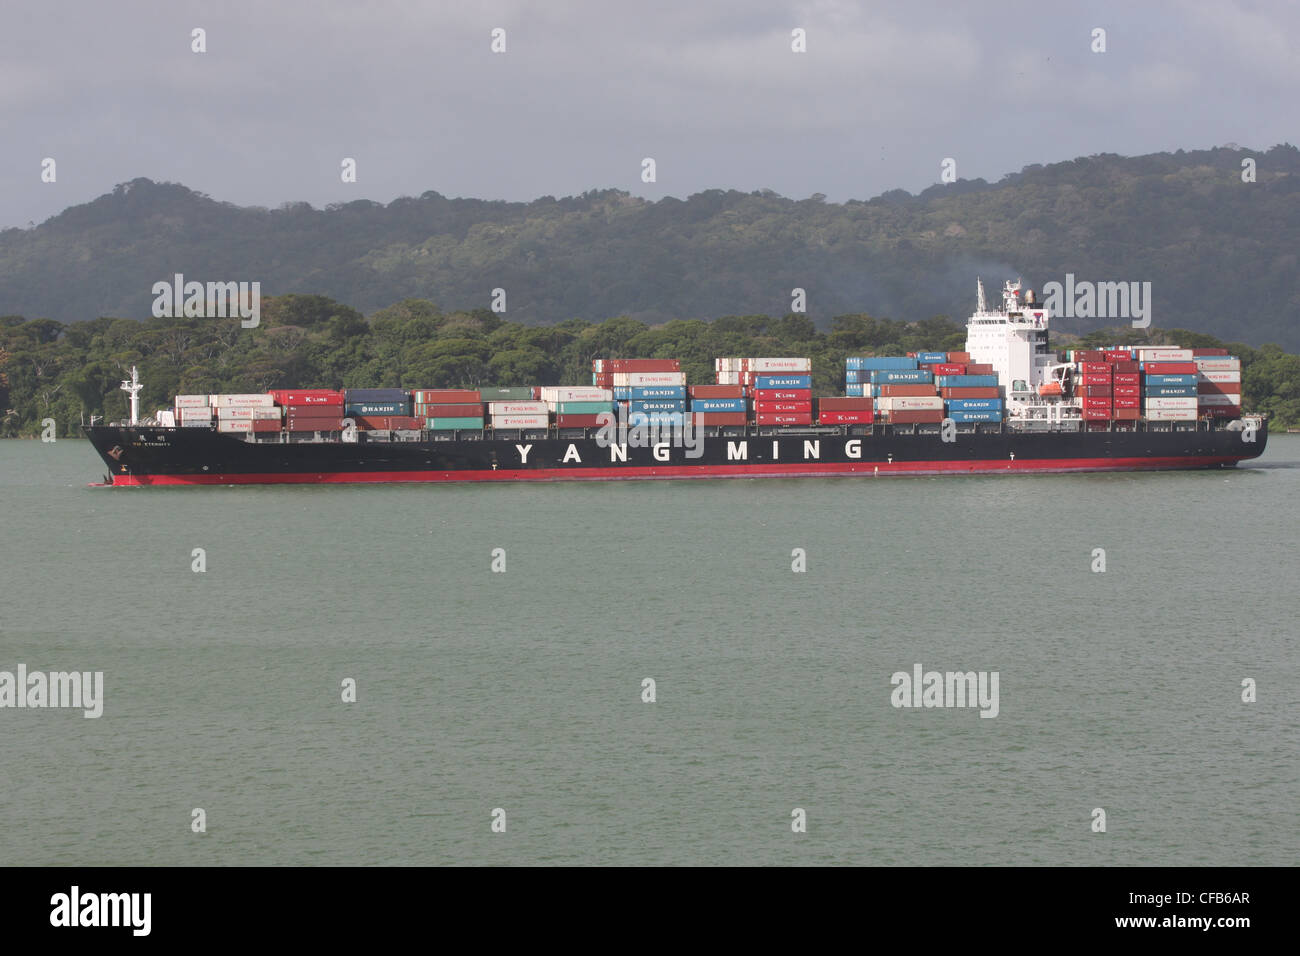 Le YM l'éternité d'un cargo (Yang Ming) sur le lac Gatun, Canal de Panama Banque D'Images